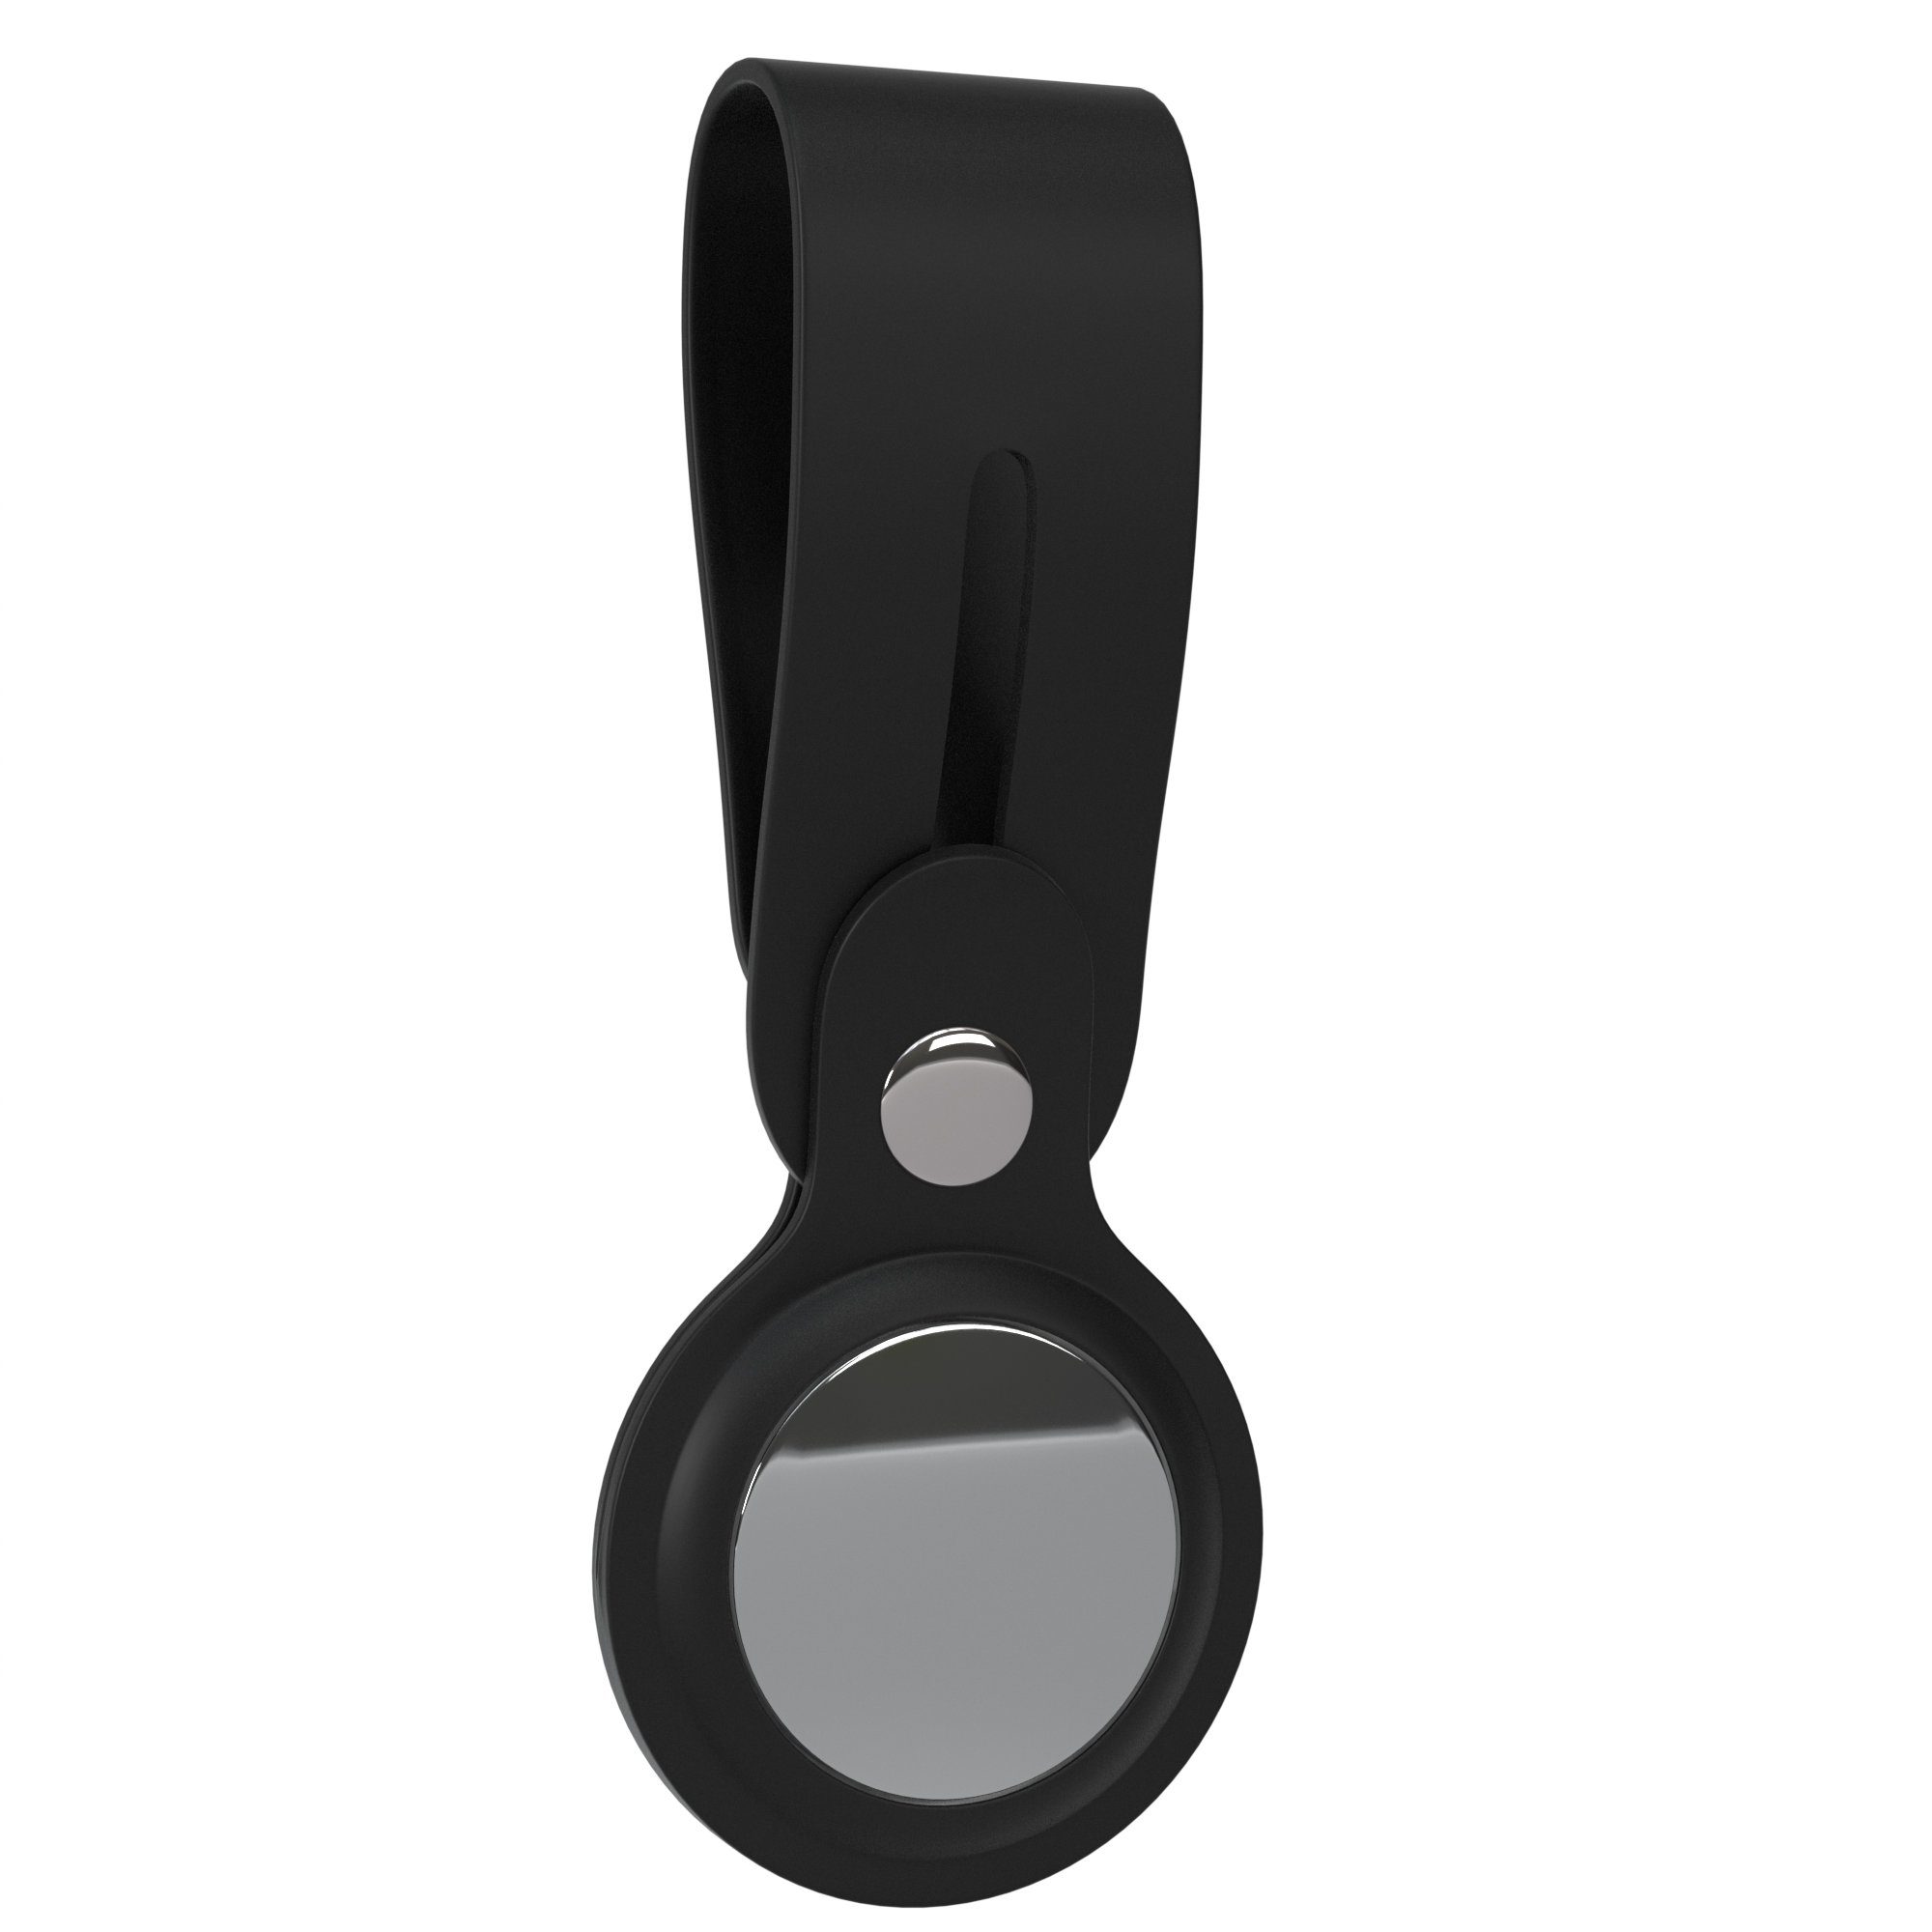 mit AirTag, Schlüsselanhänger mit Apple Airtags EAZY Silikon Anhänger Tracker Schutzhülle Schwarz Hülle Case kompatibel Schlaufe CASE